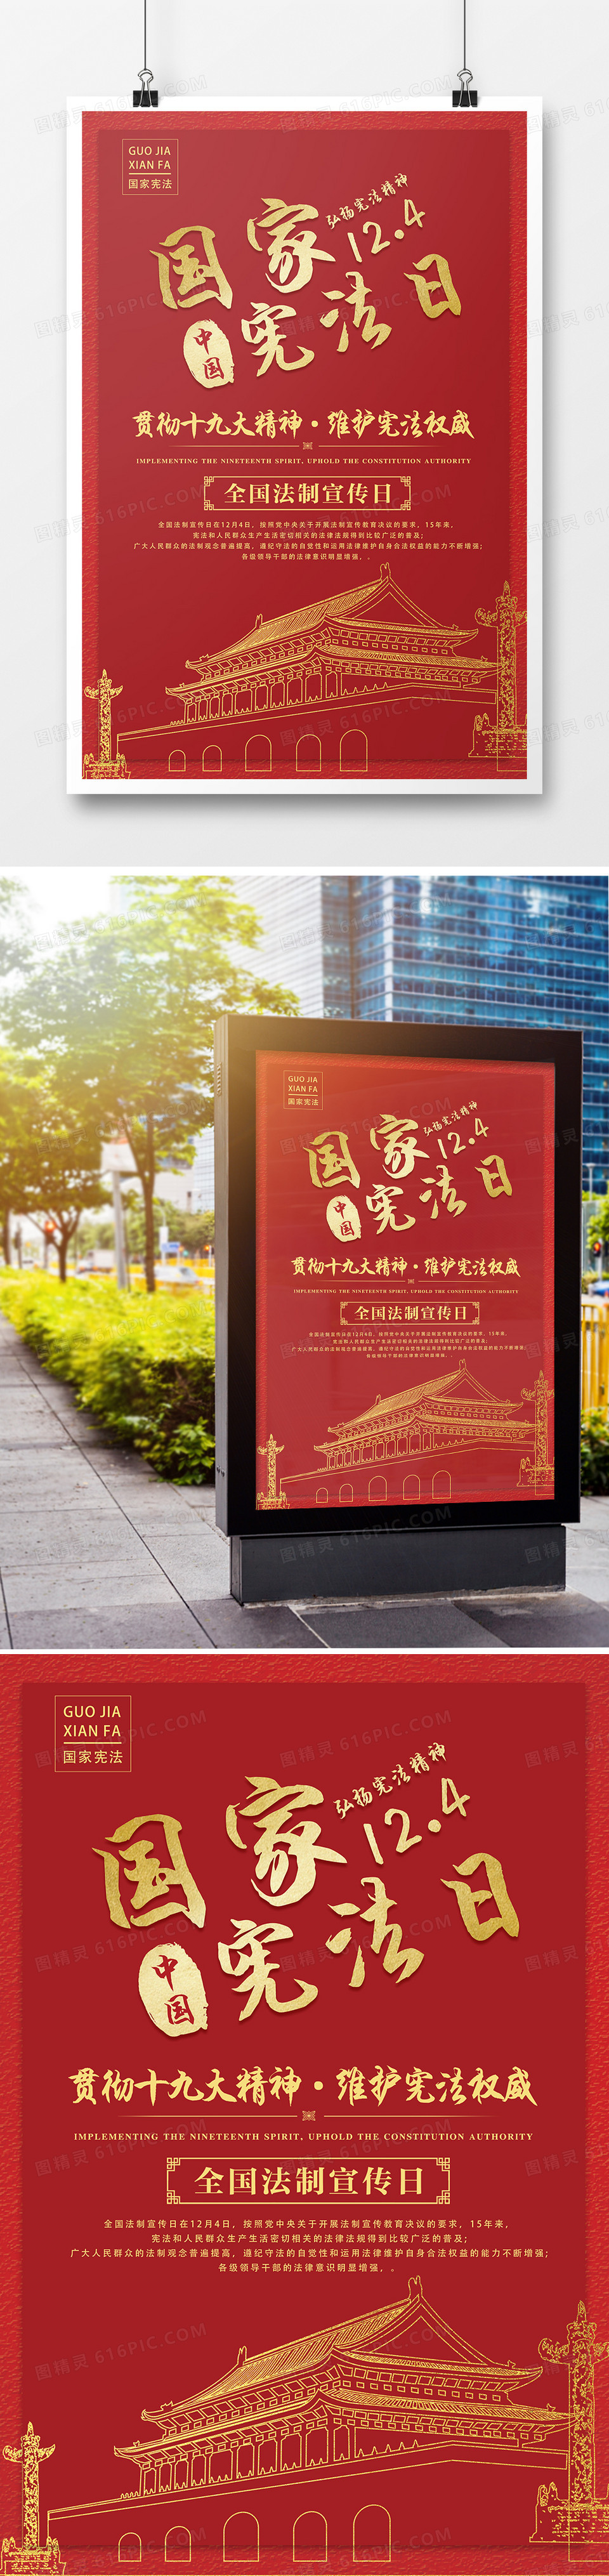 2018年国家宪法日宣传海报